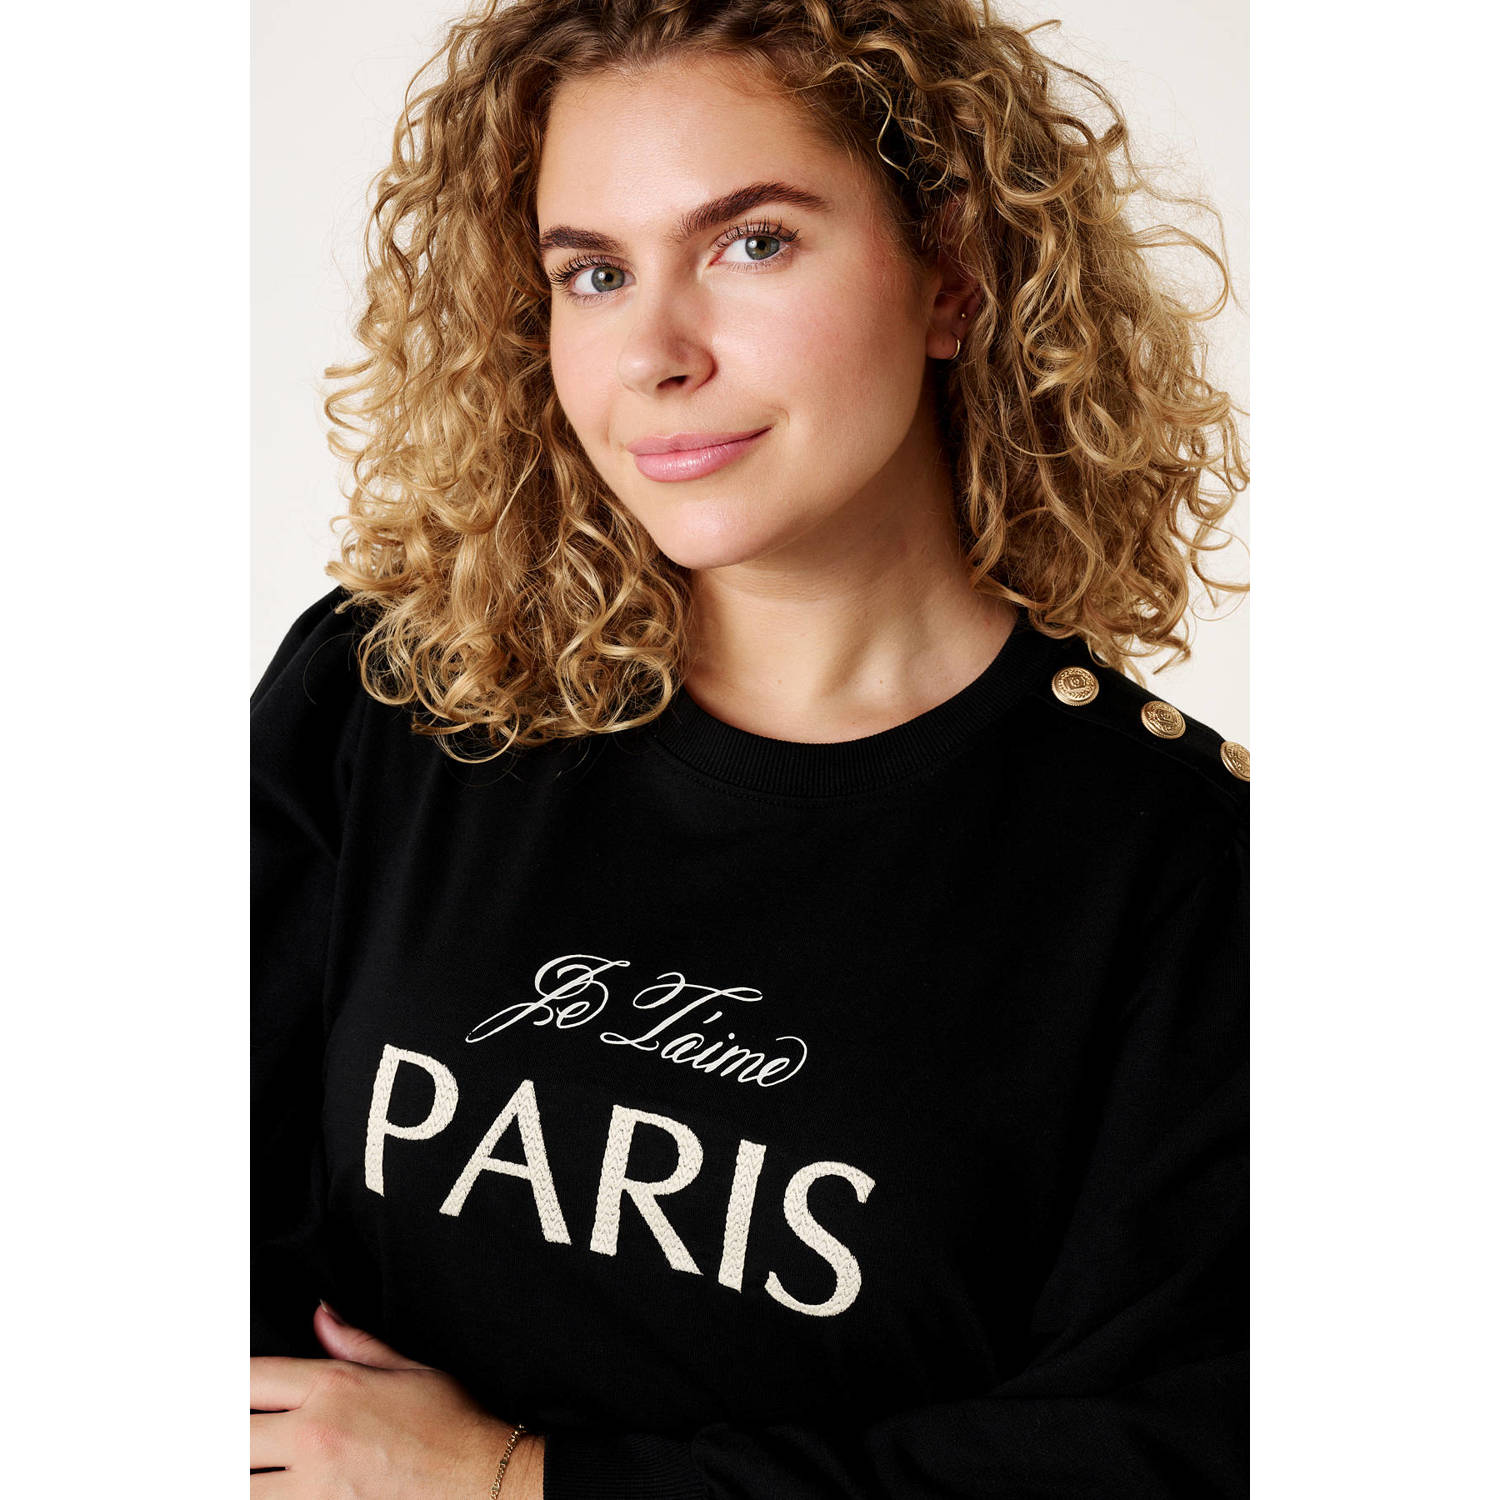 MS Mode sweater met tekst zwart